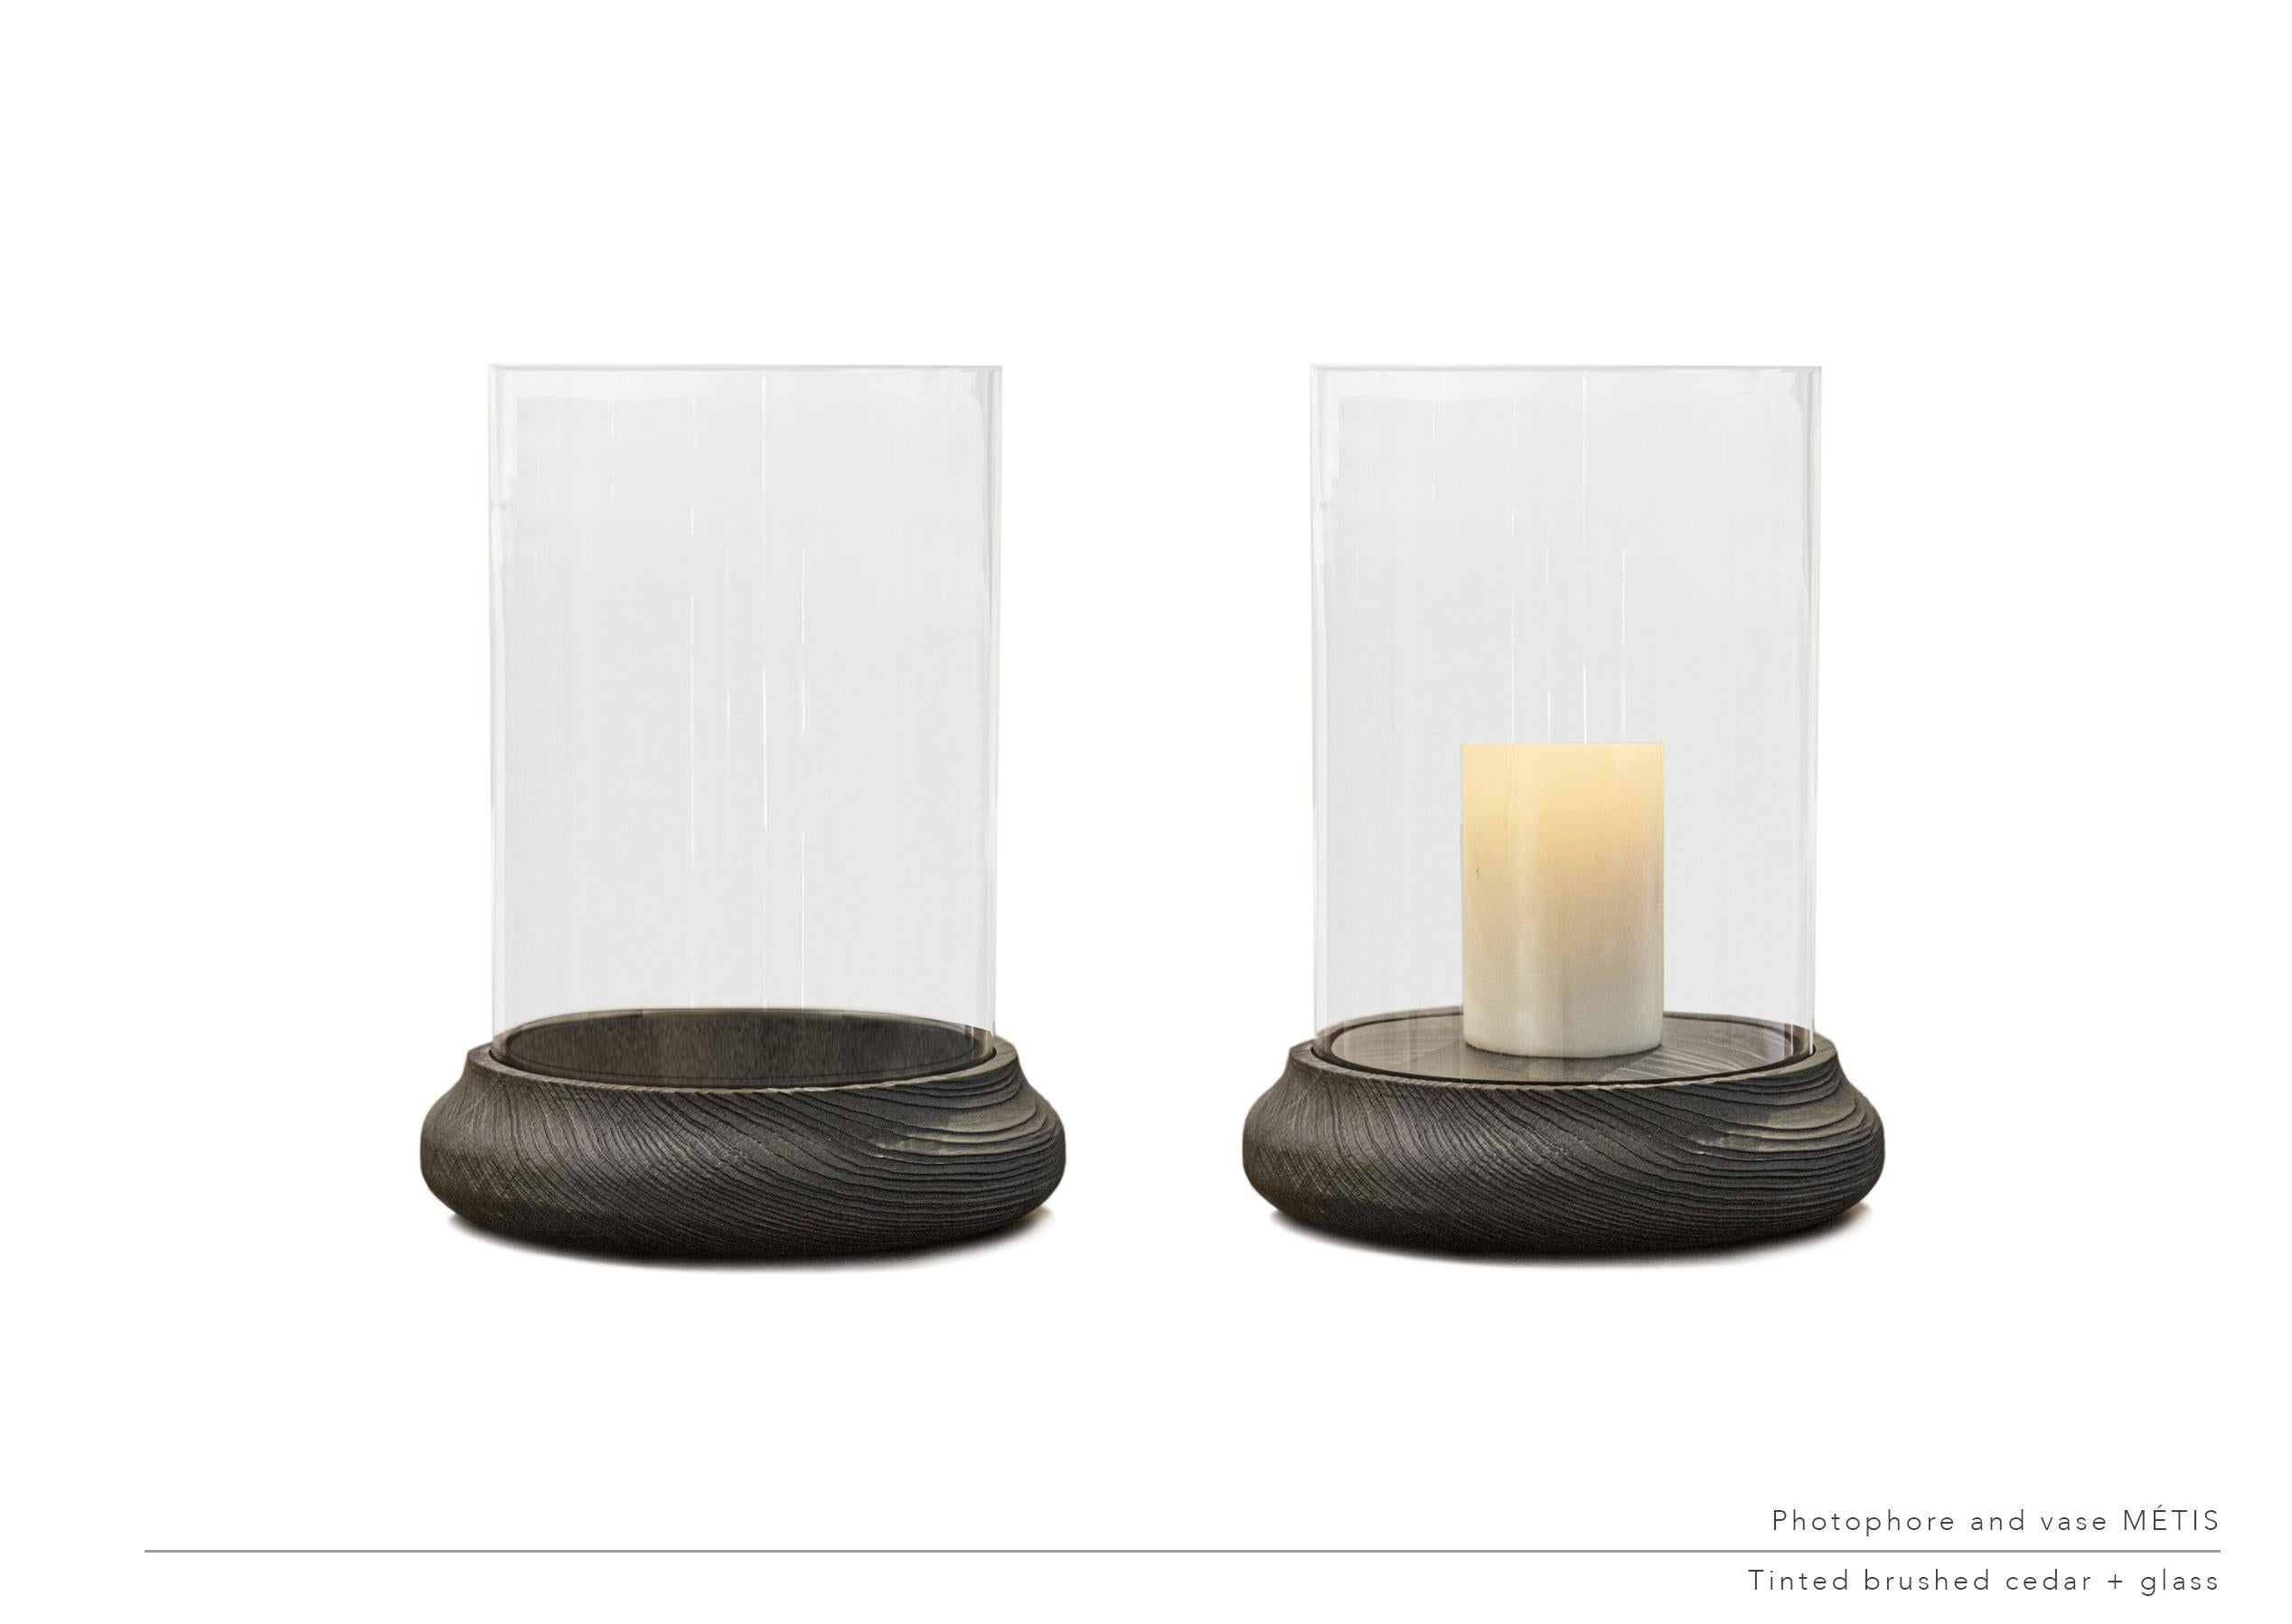 2er-Set Metis Vasen-Kerzenhalter von LK Edition
Abmessungen: Durchmesser 32 x Höhe 4cm
MATERIALIEN: Eiche, Glas und Sockel aus patinierter Bronze.


Es ist mit dem Sinn für Detail und Anforderung, diese Forschung der Ausnahme durch die Auswahl von